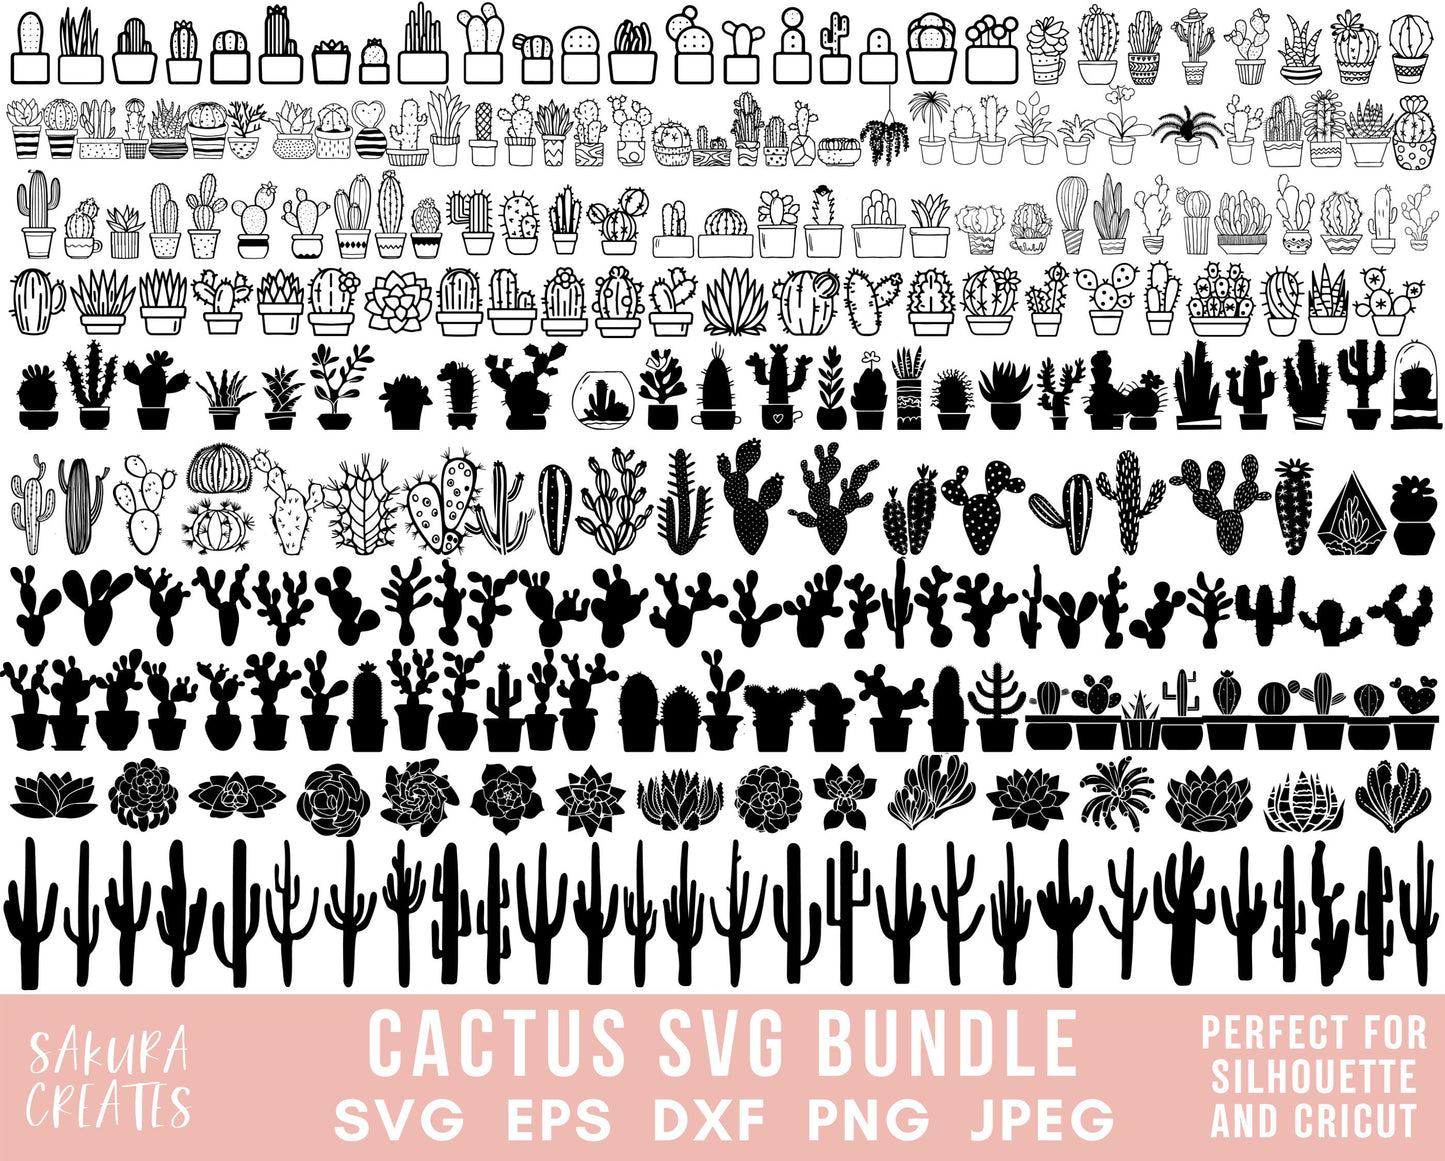 270 Cactus SVG bundle Cactus Svg File file for Cricut Cactus Cut File Cactus Vector Succulent SVG pack Houseplant svg Potted Plant Clipart